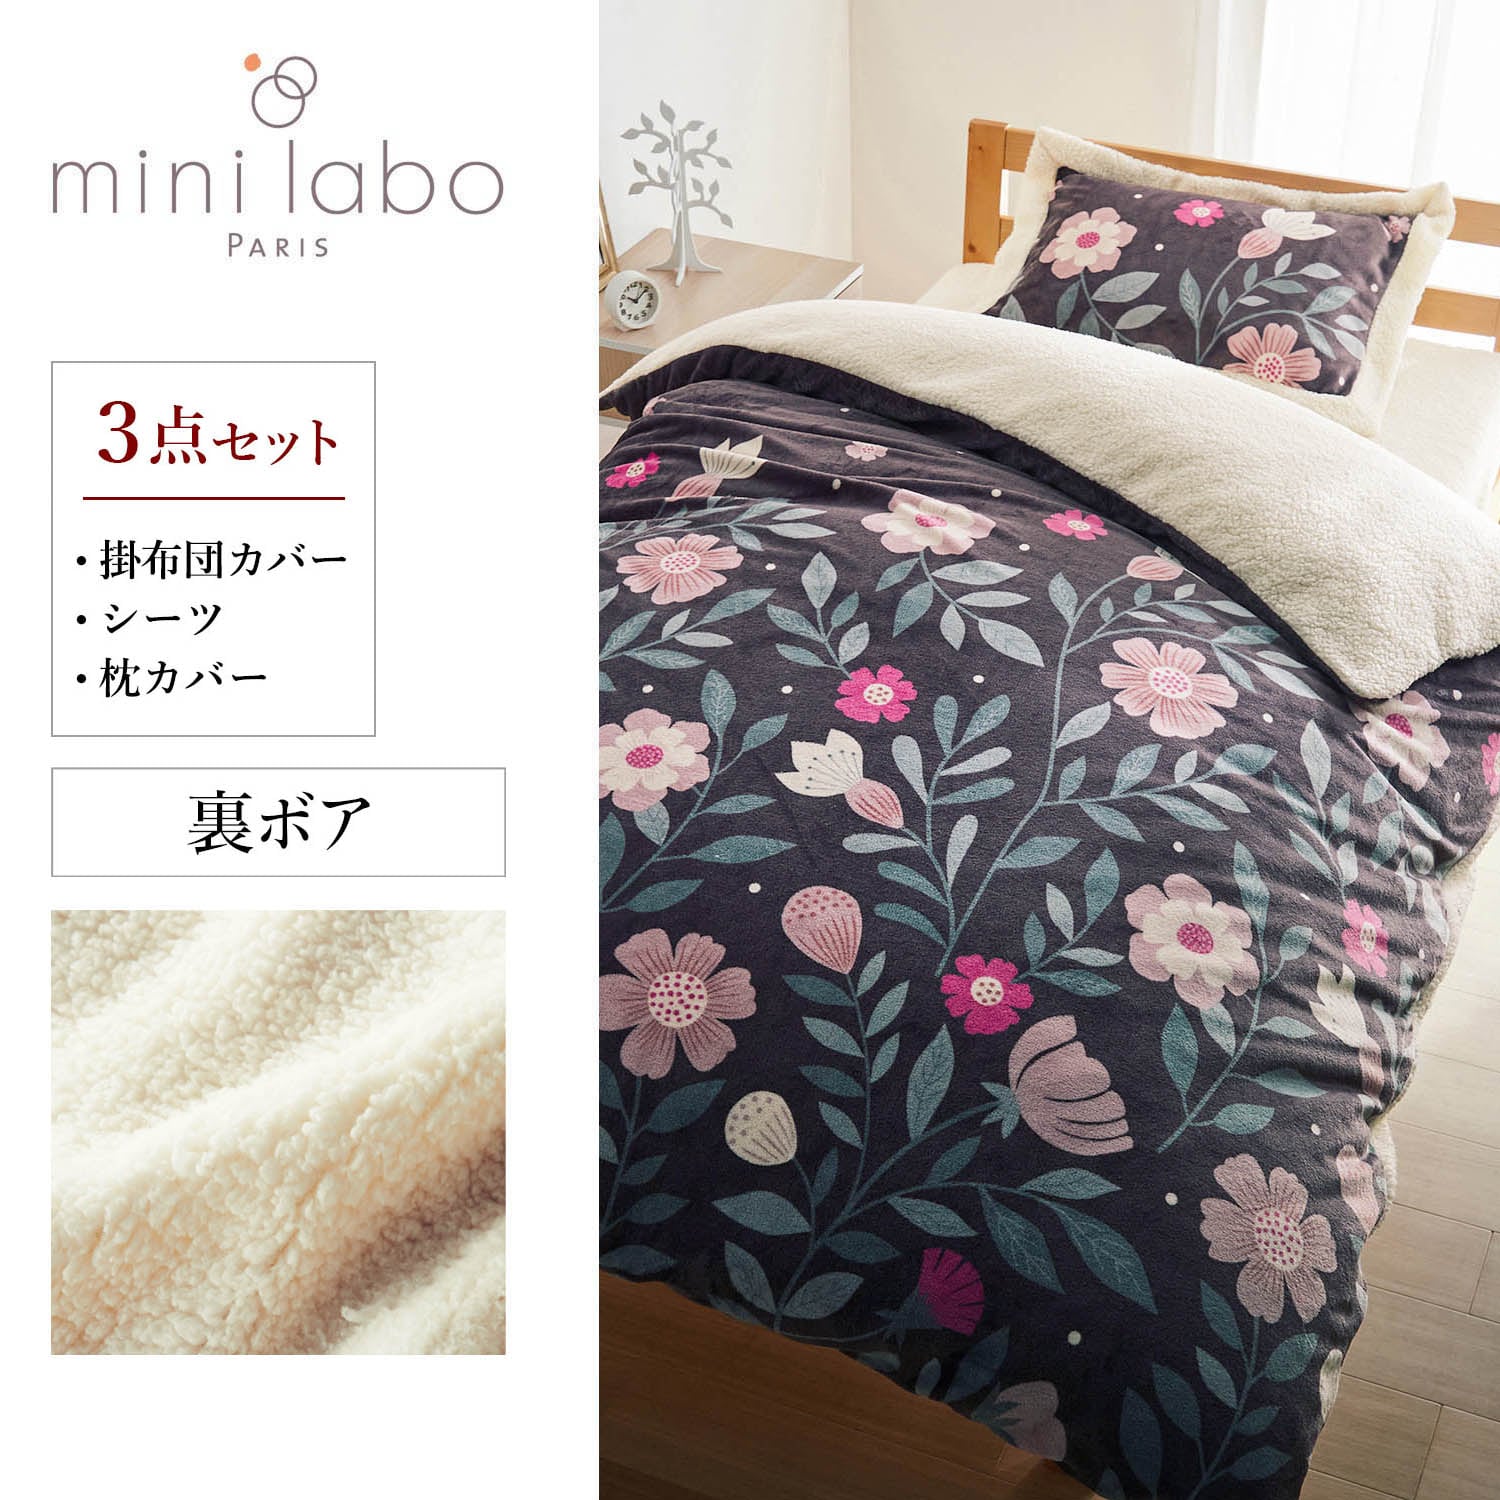 【ミニラボ/mini labo】マイクロファイバーとボアの布団カバーセット(3点)/英国ののどかな庭 「ミニラボ」